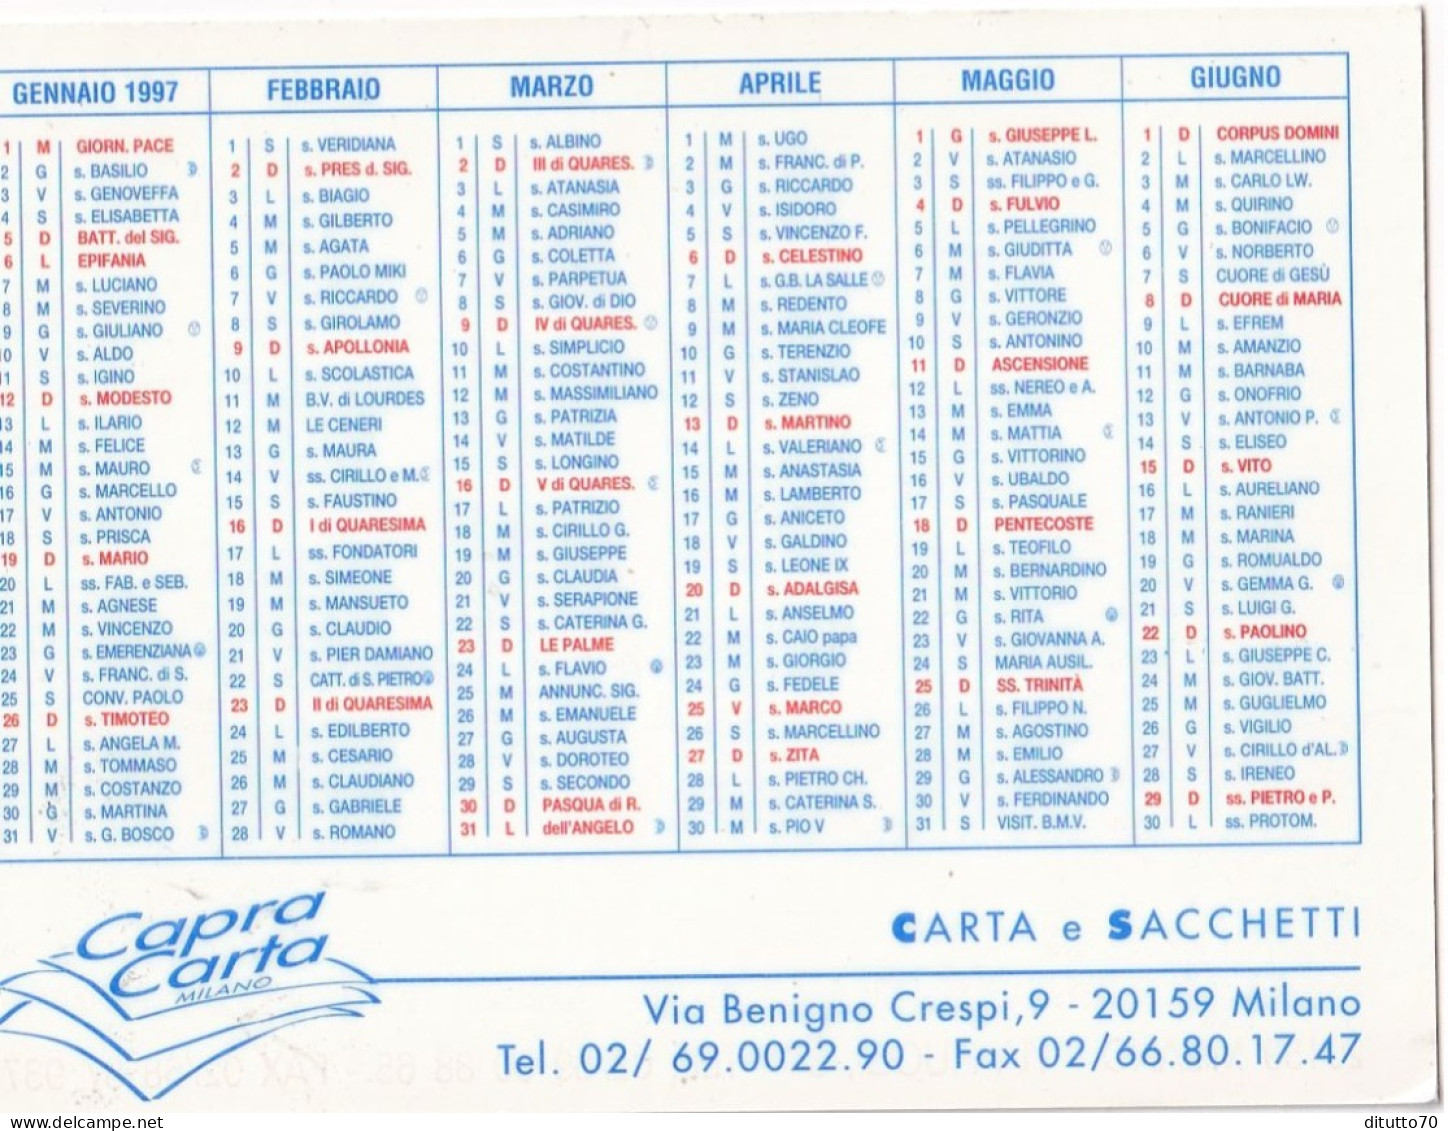 Calendarietto - Capra Carta - Miano - Anno 1997 - Small : 1991-00